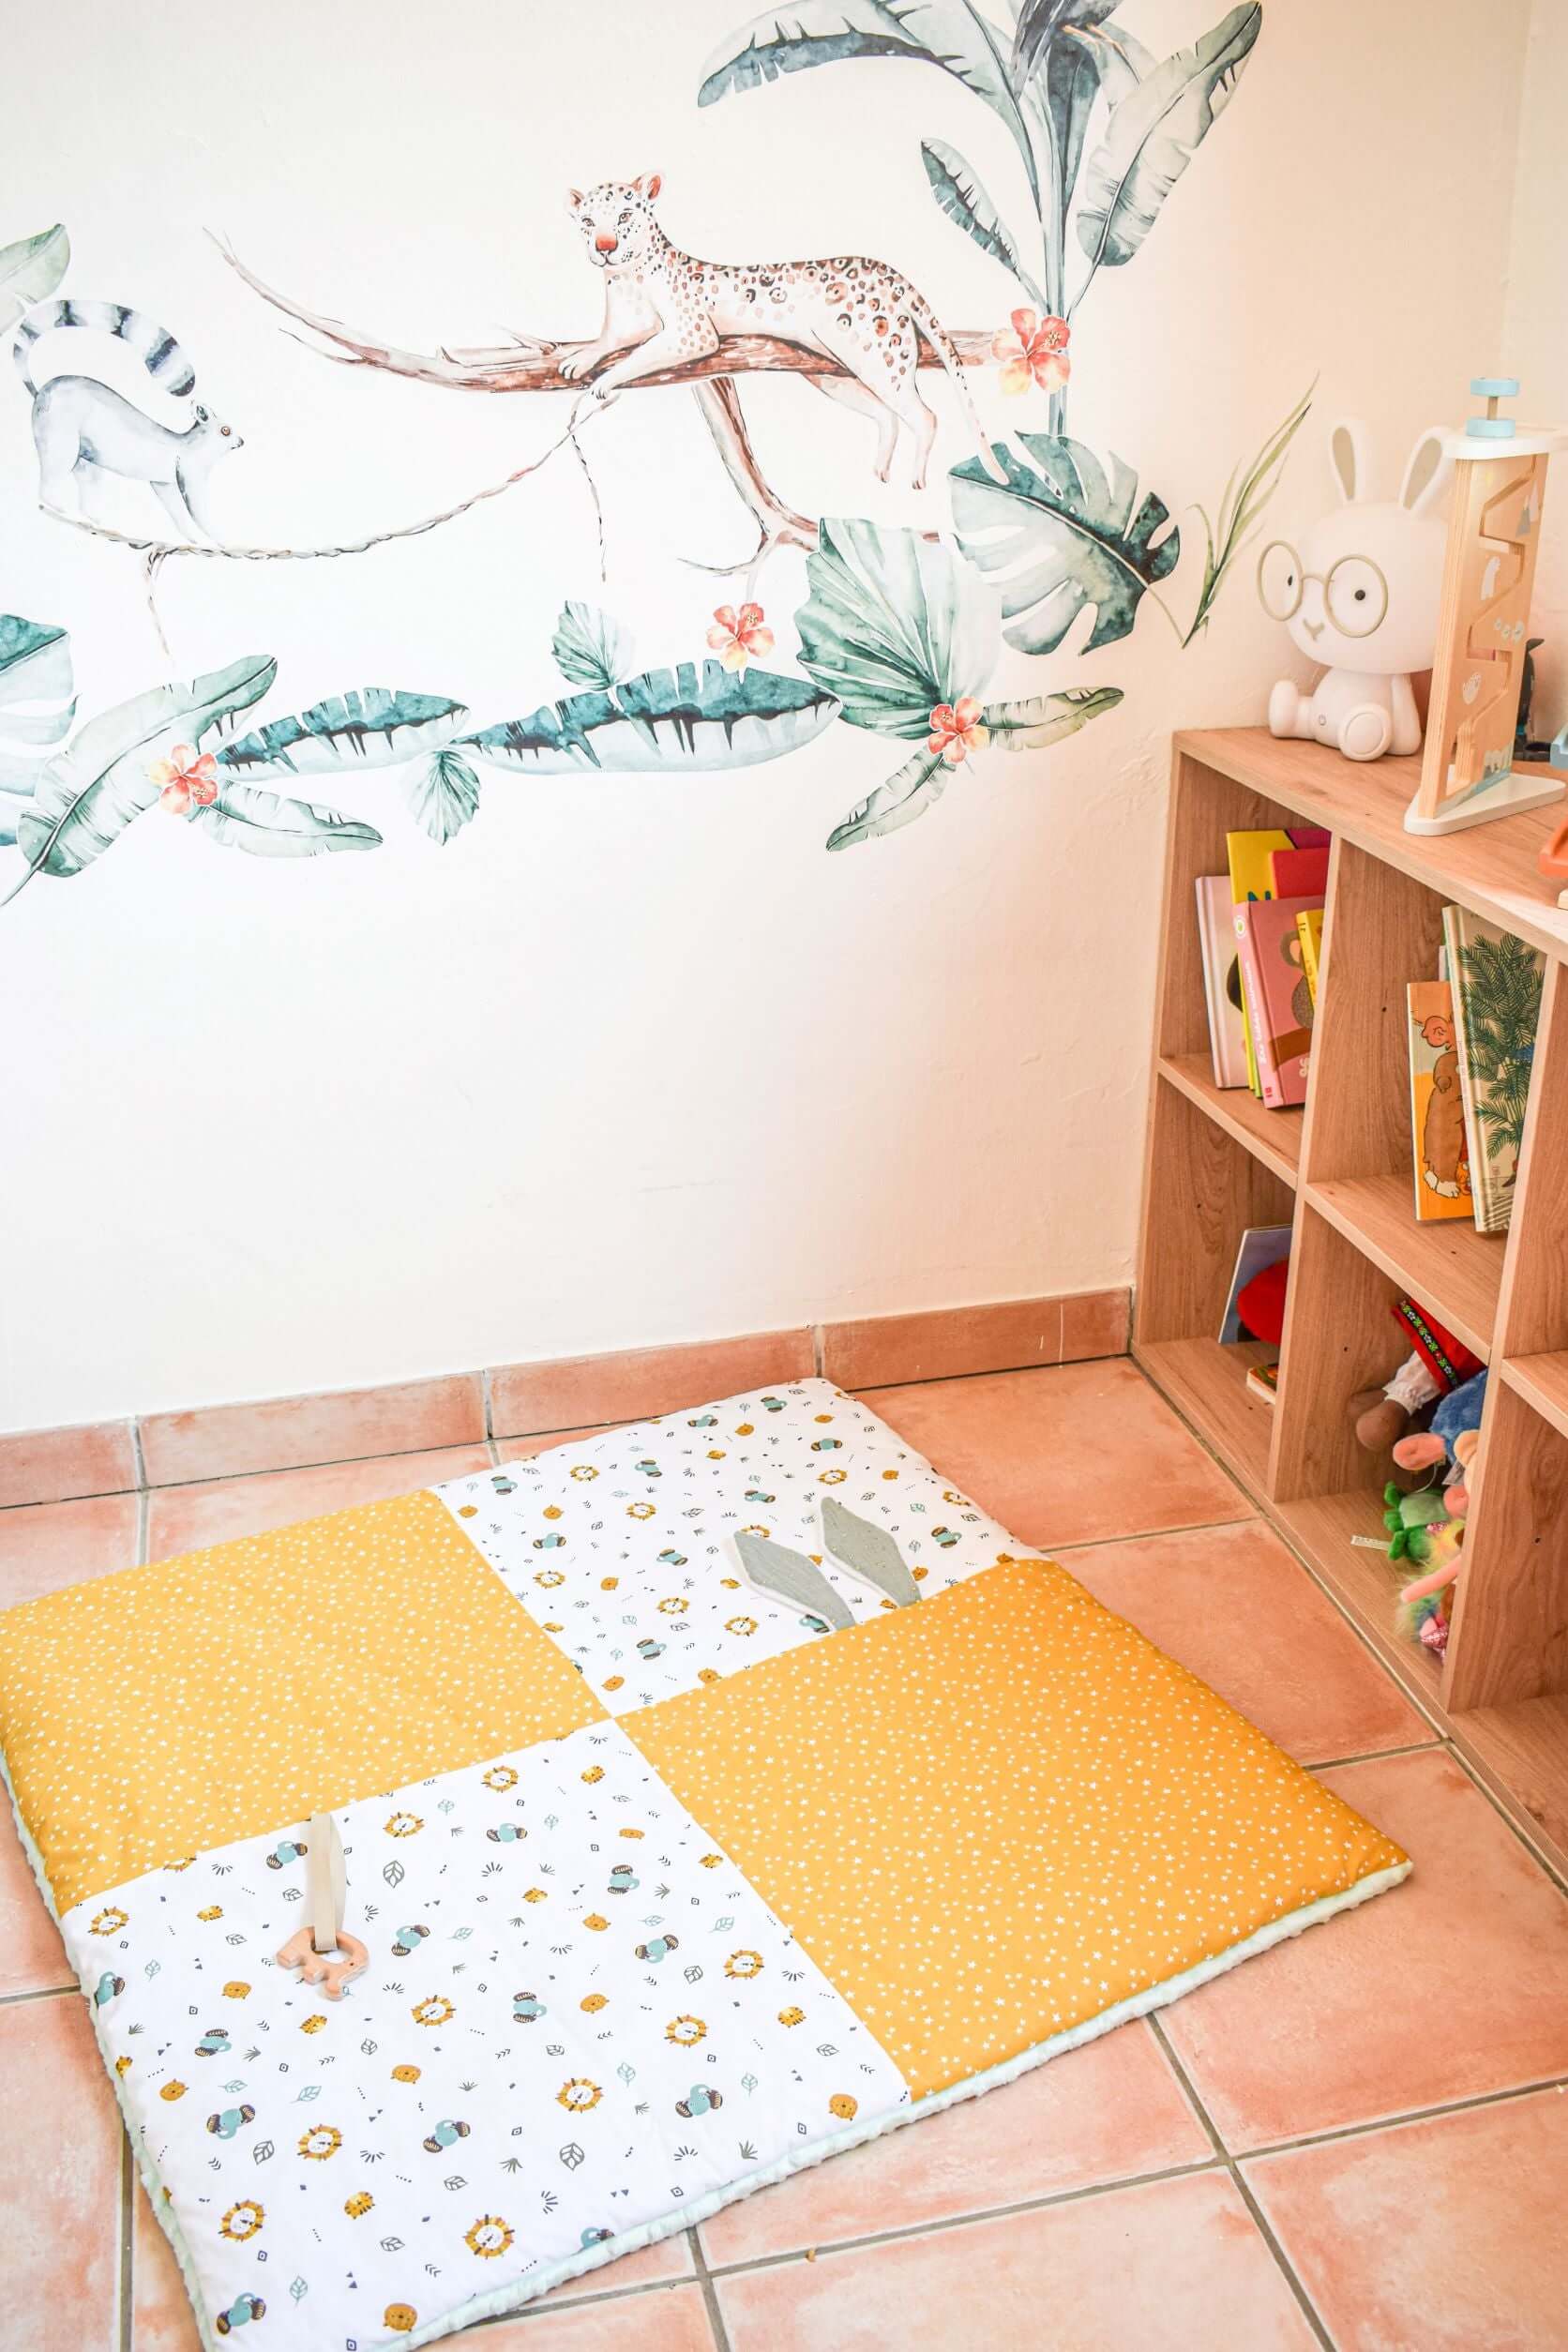 Couverture étapes et tapis bébé - Achat coffret cadeau de naissance au  Maroc: bébé, maman